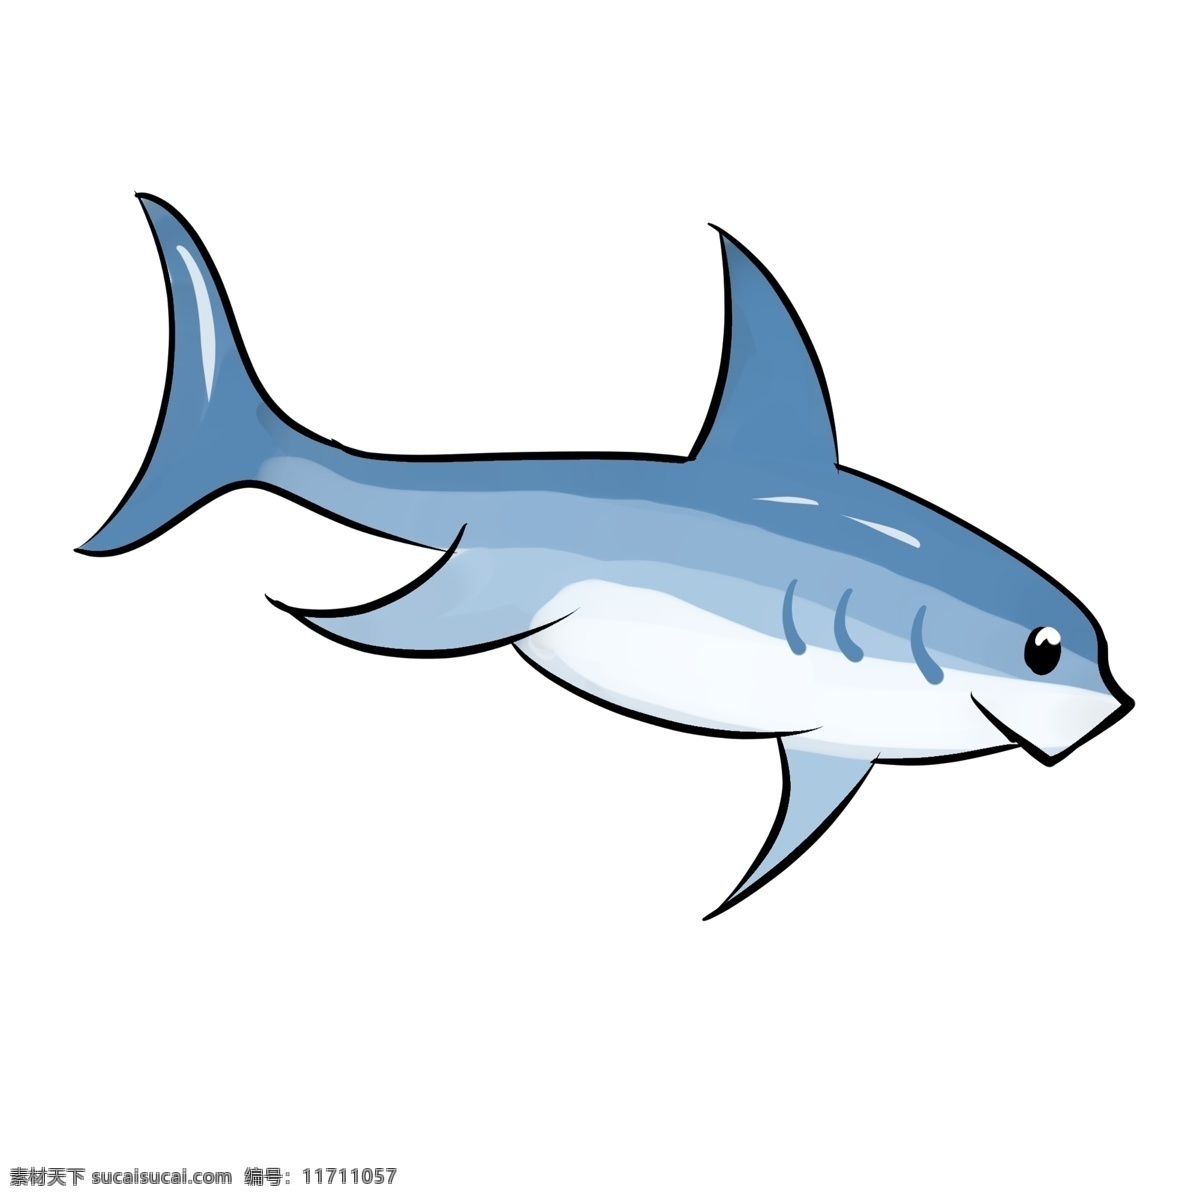 可爱海洋鱼类 蓝色 鱼类 海洋生物